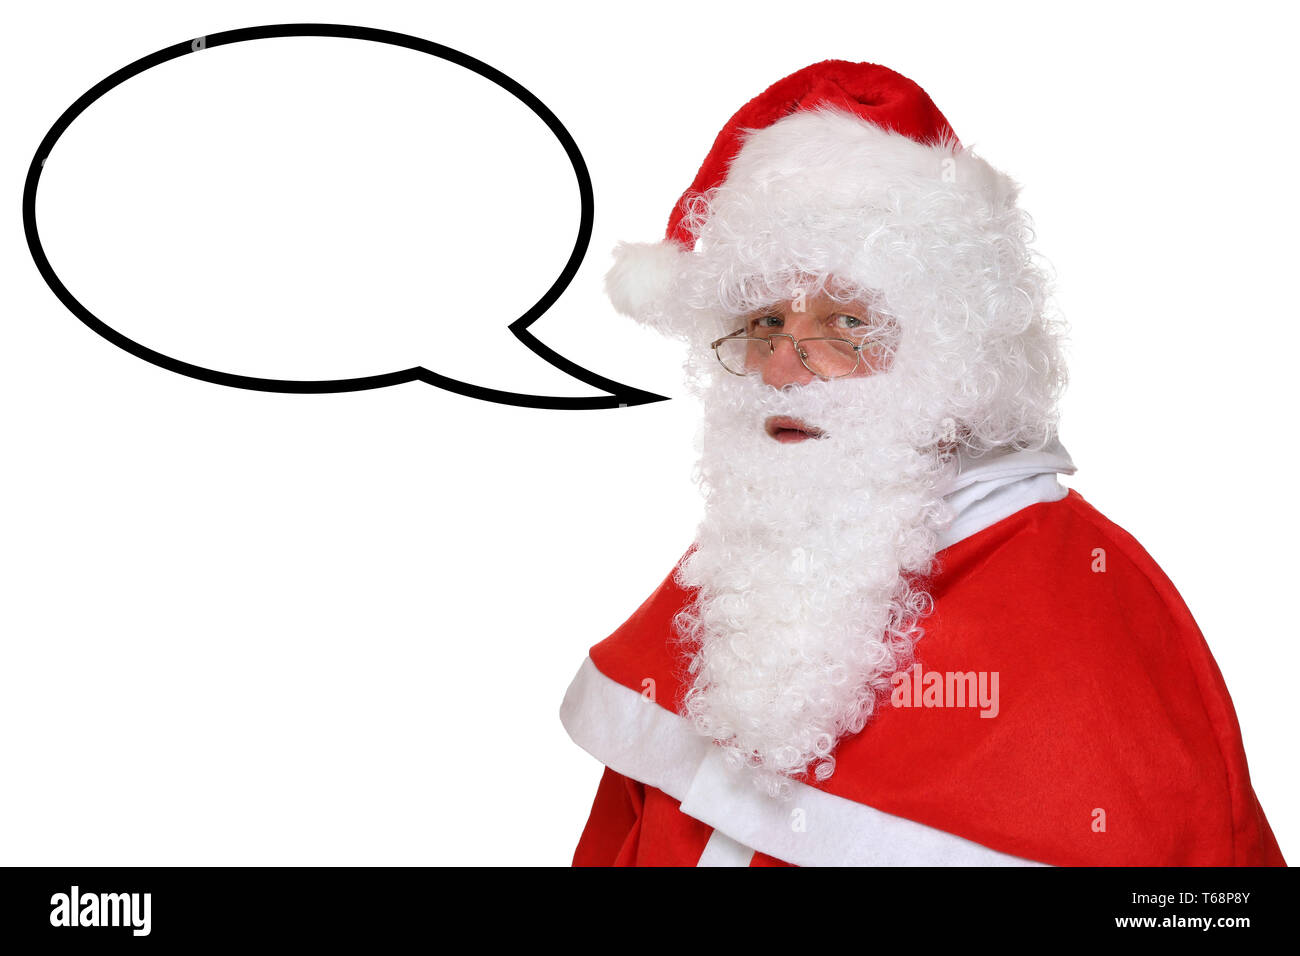 Weihnachtsmann Nikolaus Weihnachten beim sprechen mit Sprechblase und Textfreiraum Stock Photo